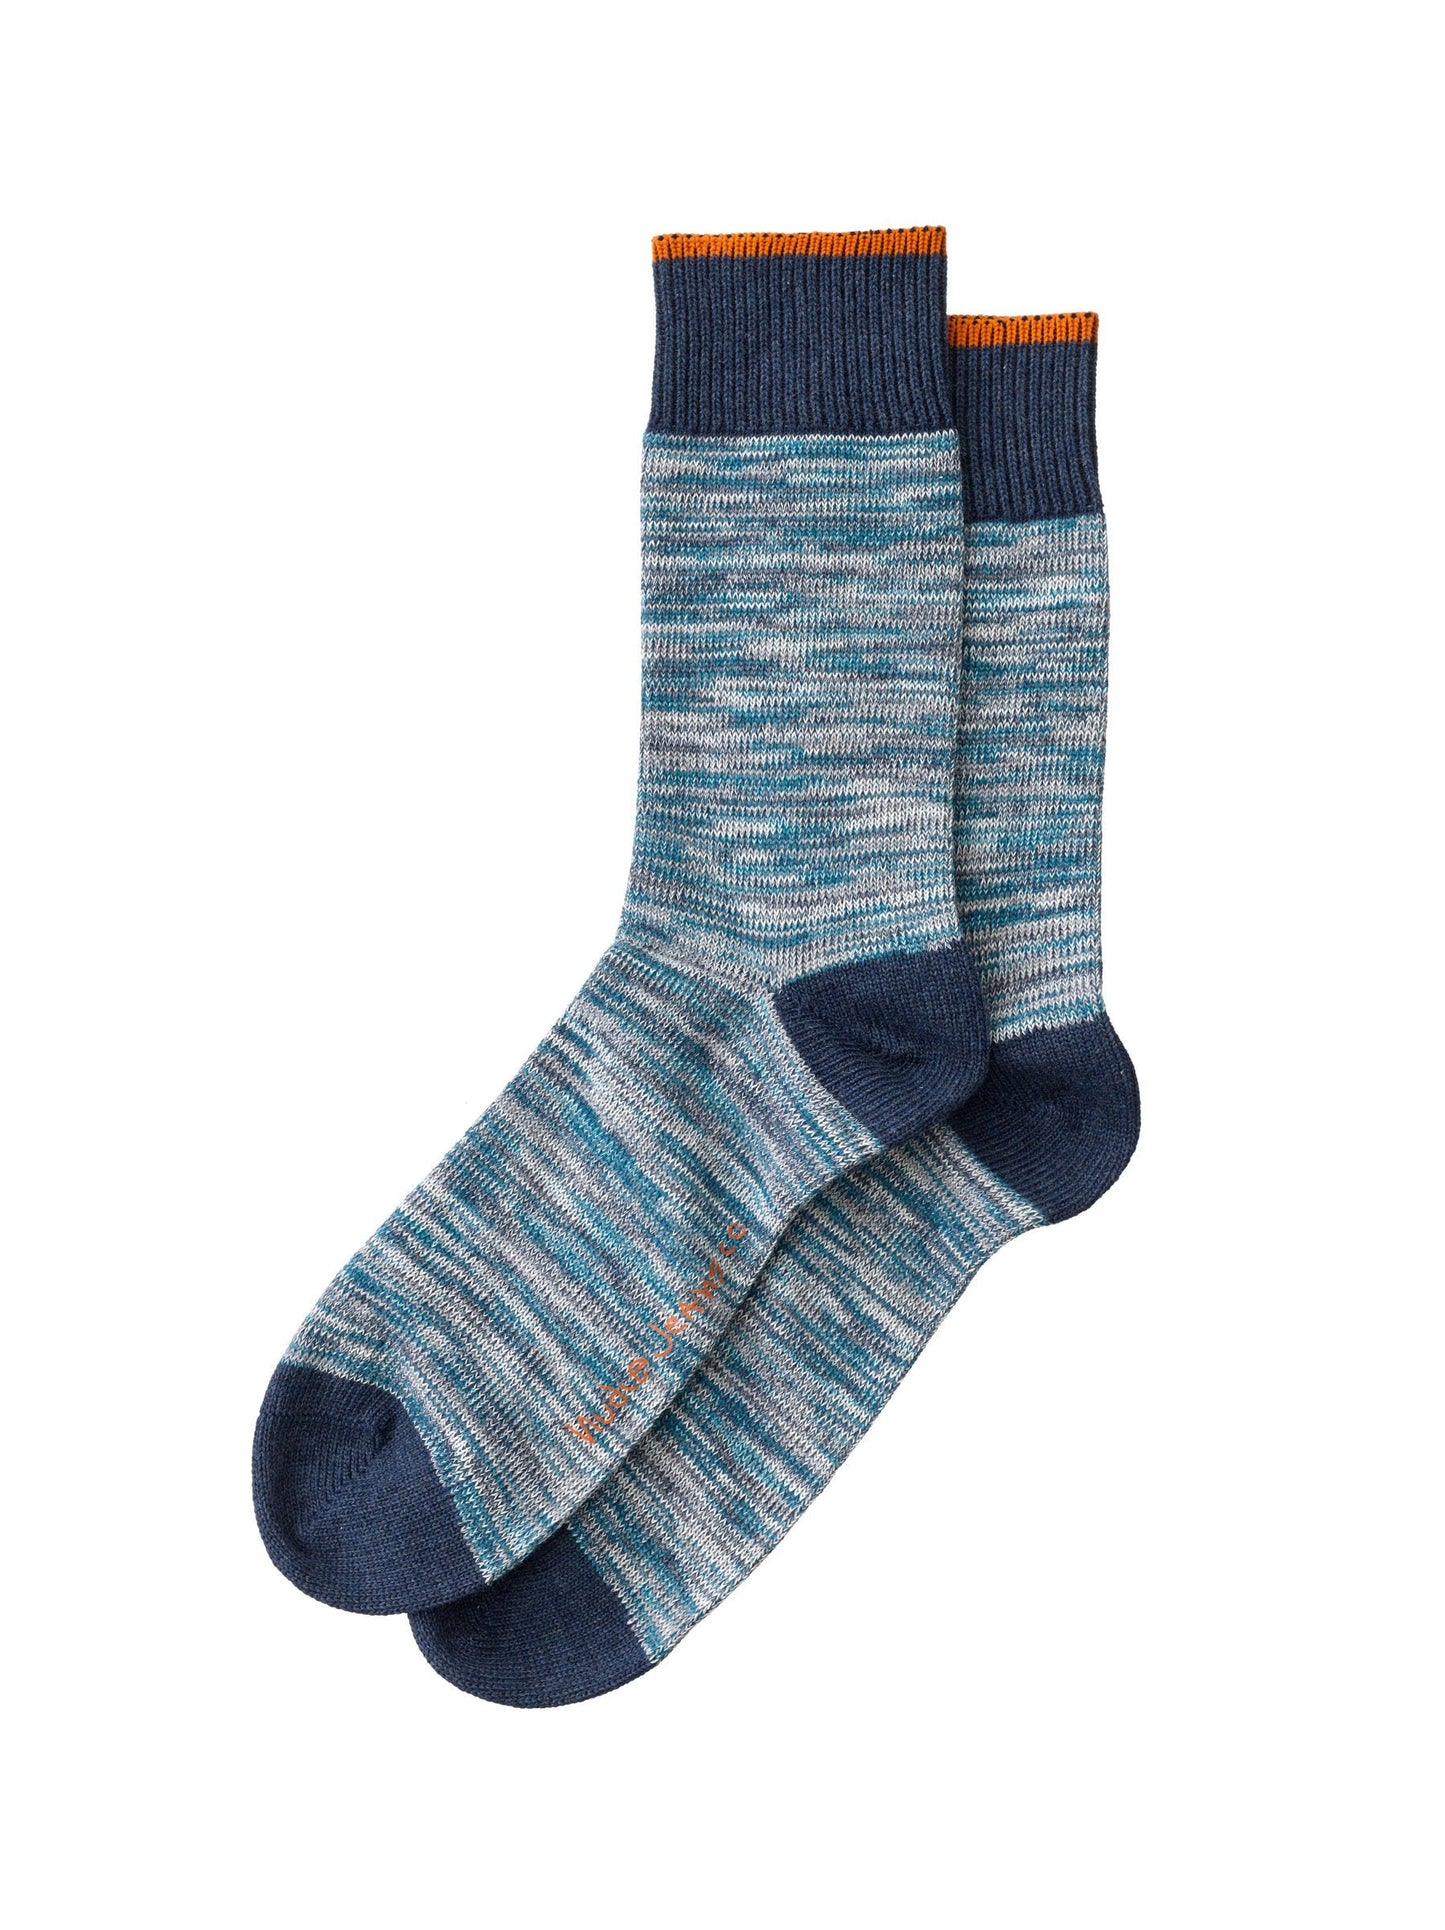 Nudie Jeans Co. Rasmusson Multi Yarn Socks